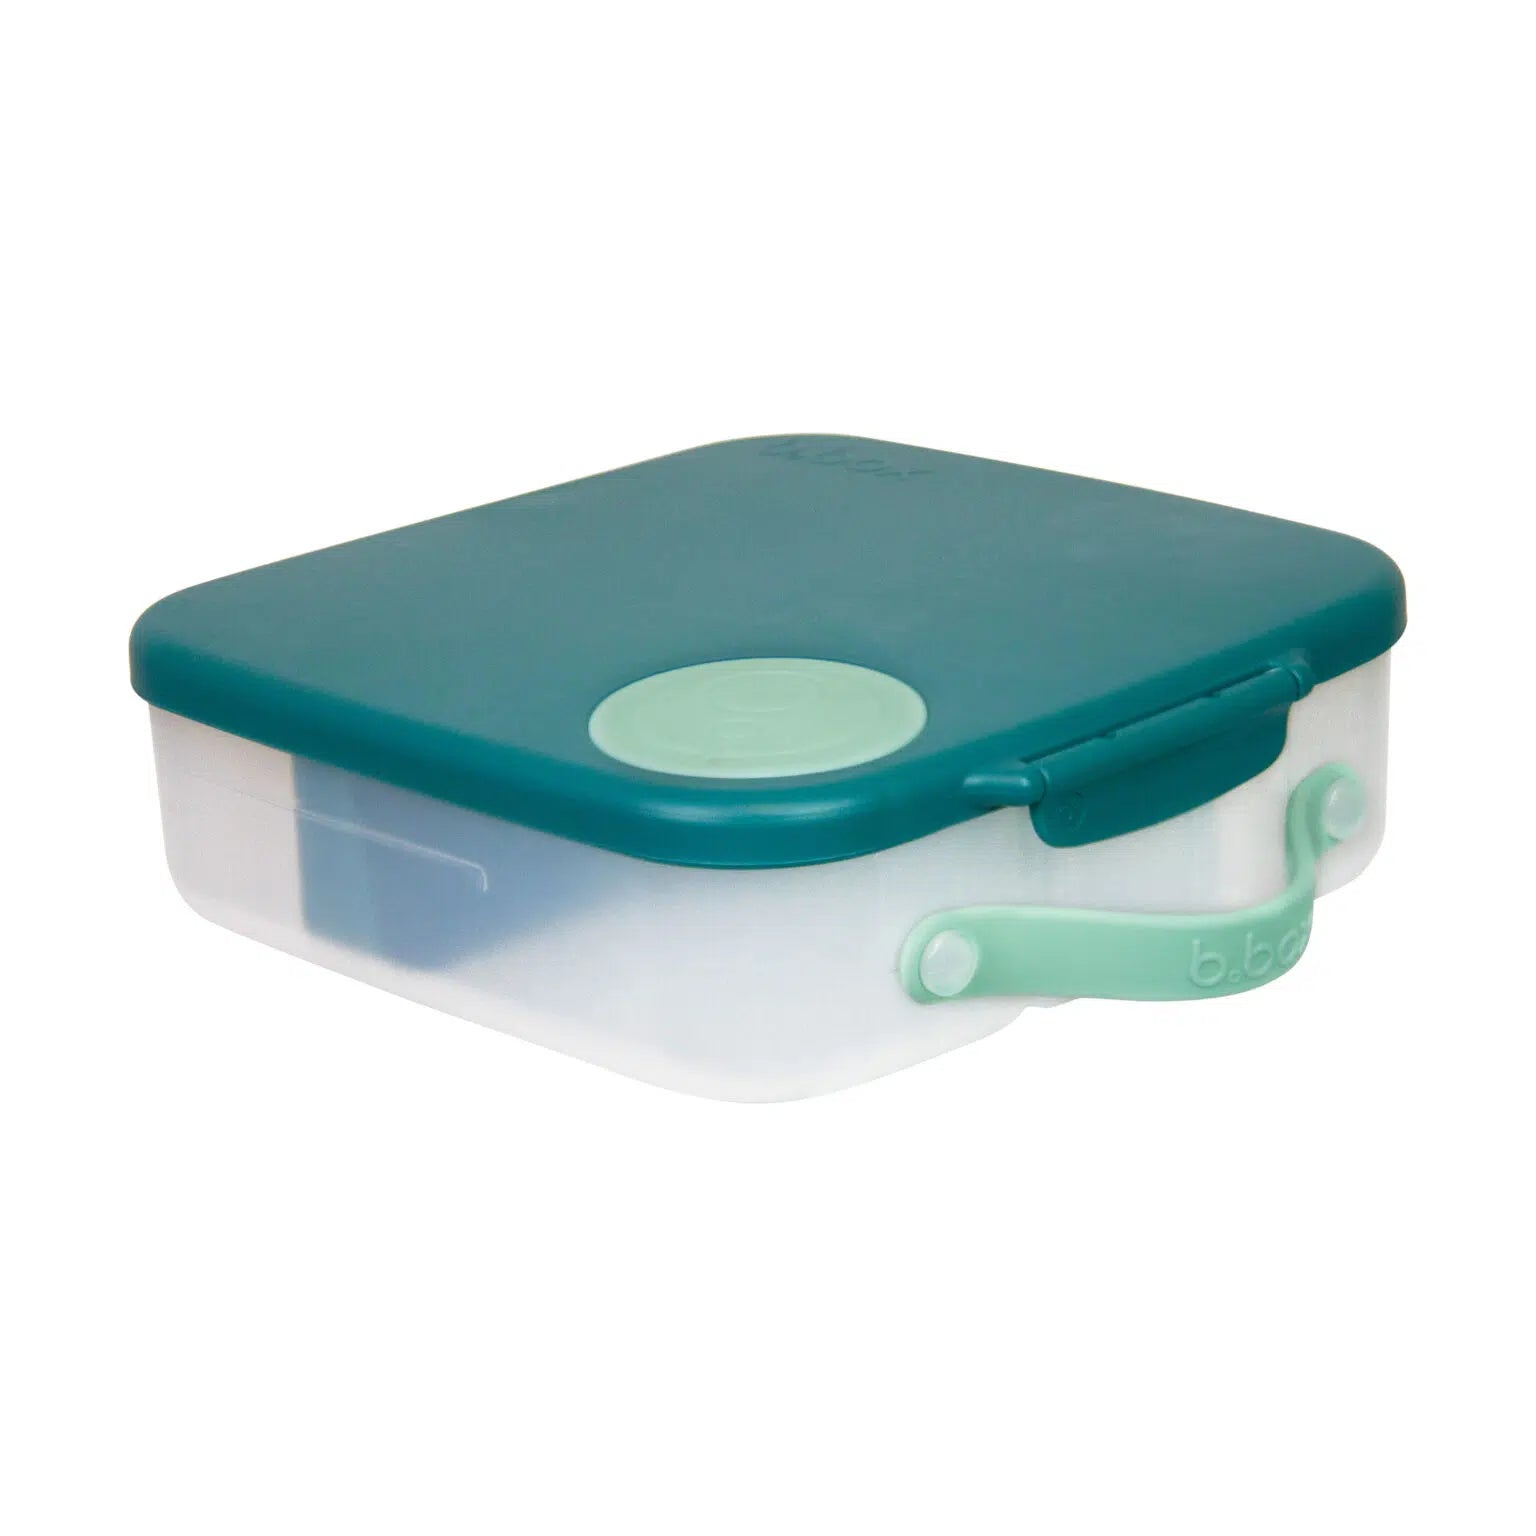 b.box - Lunchbox z wkładem chłodzącym